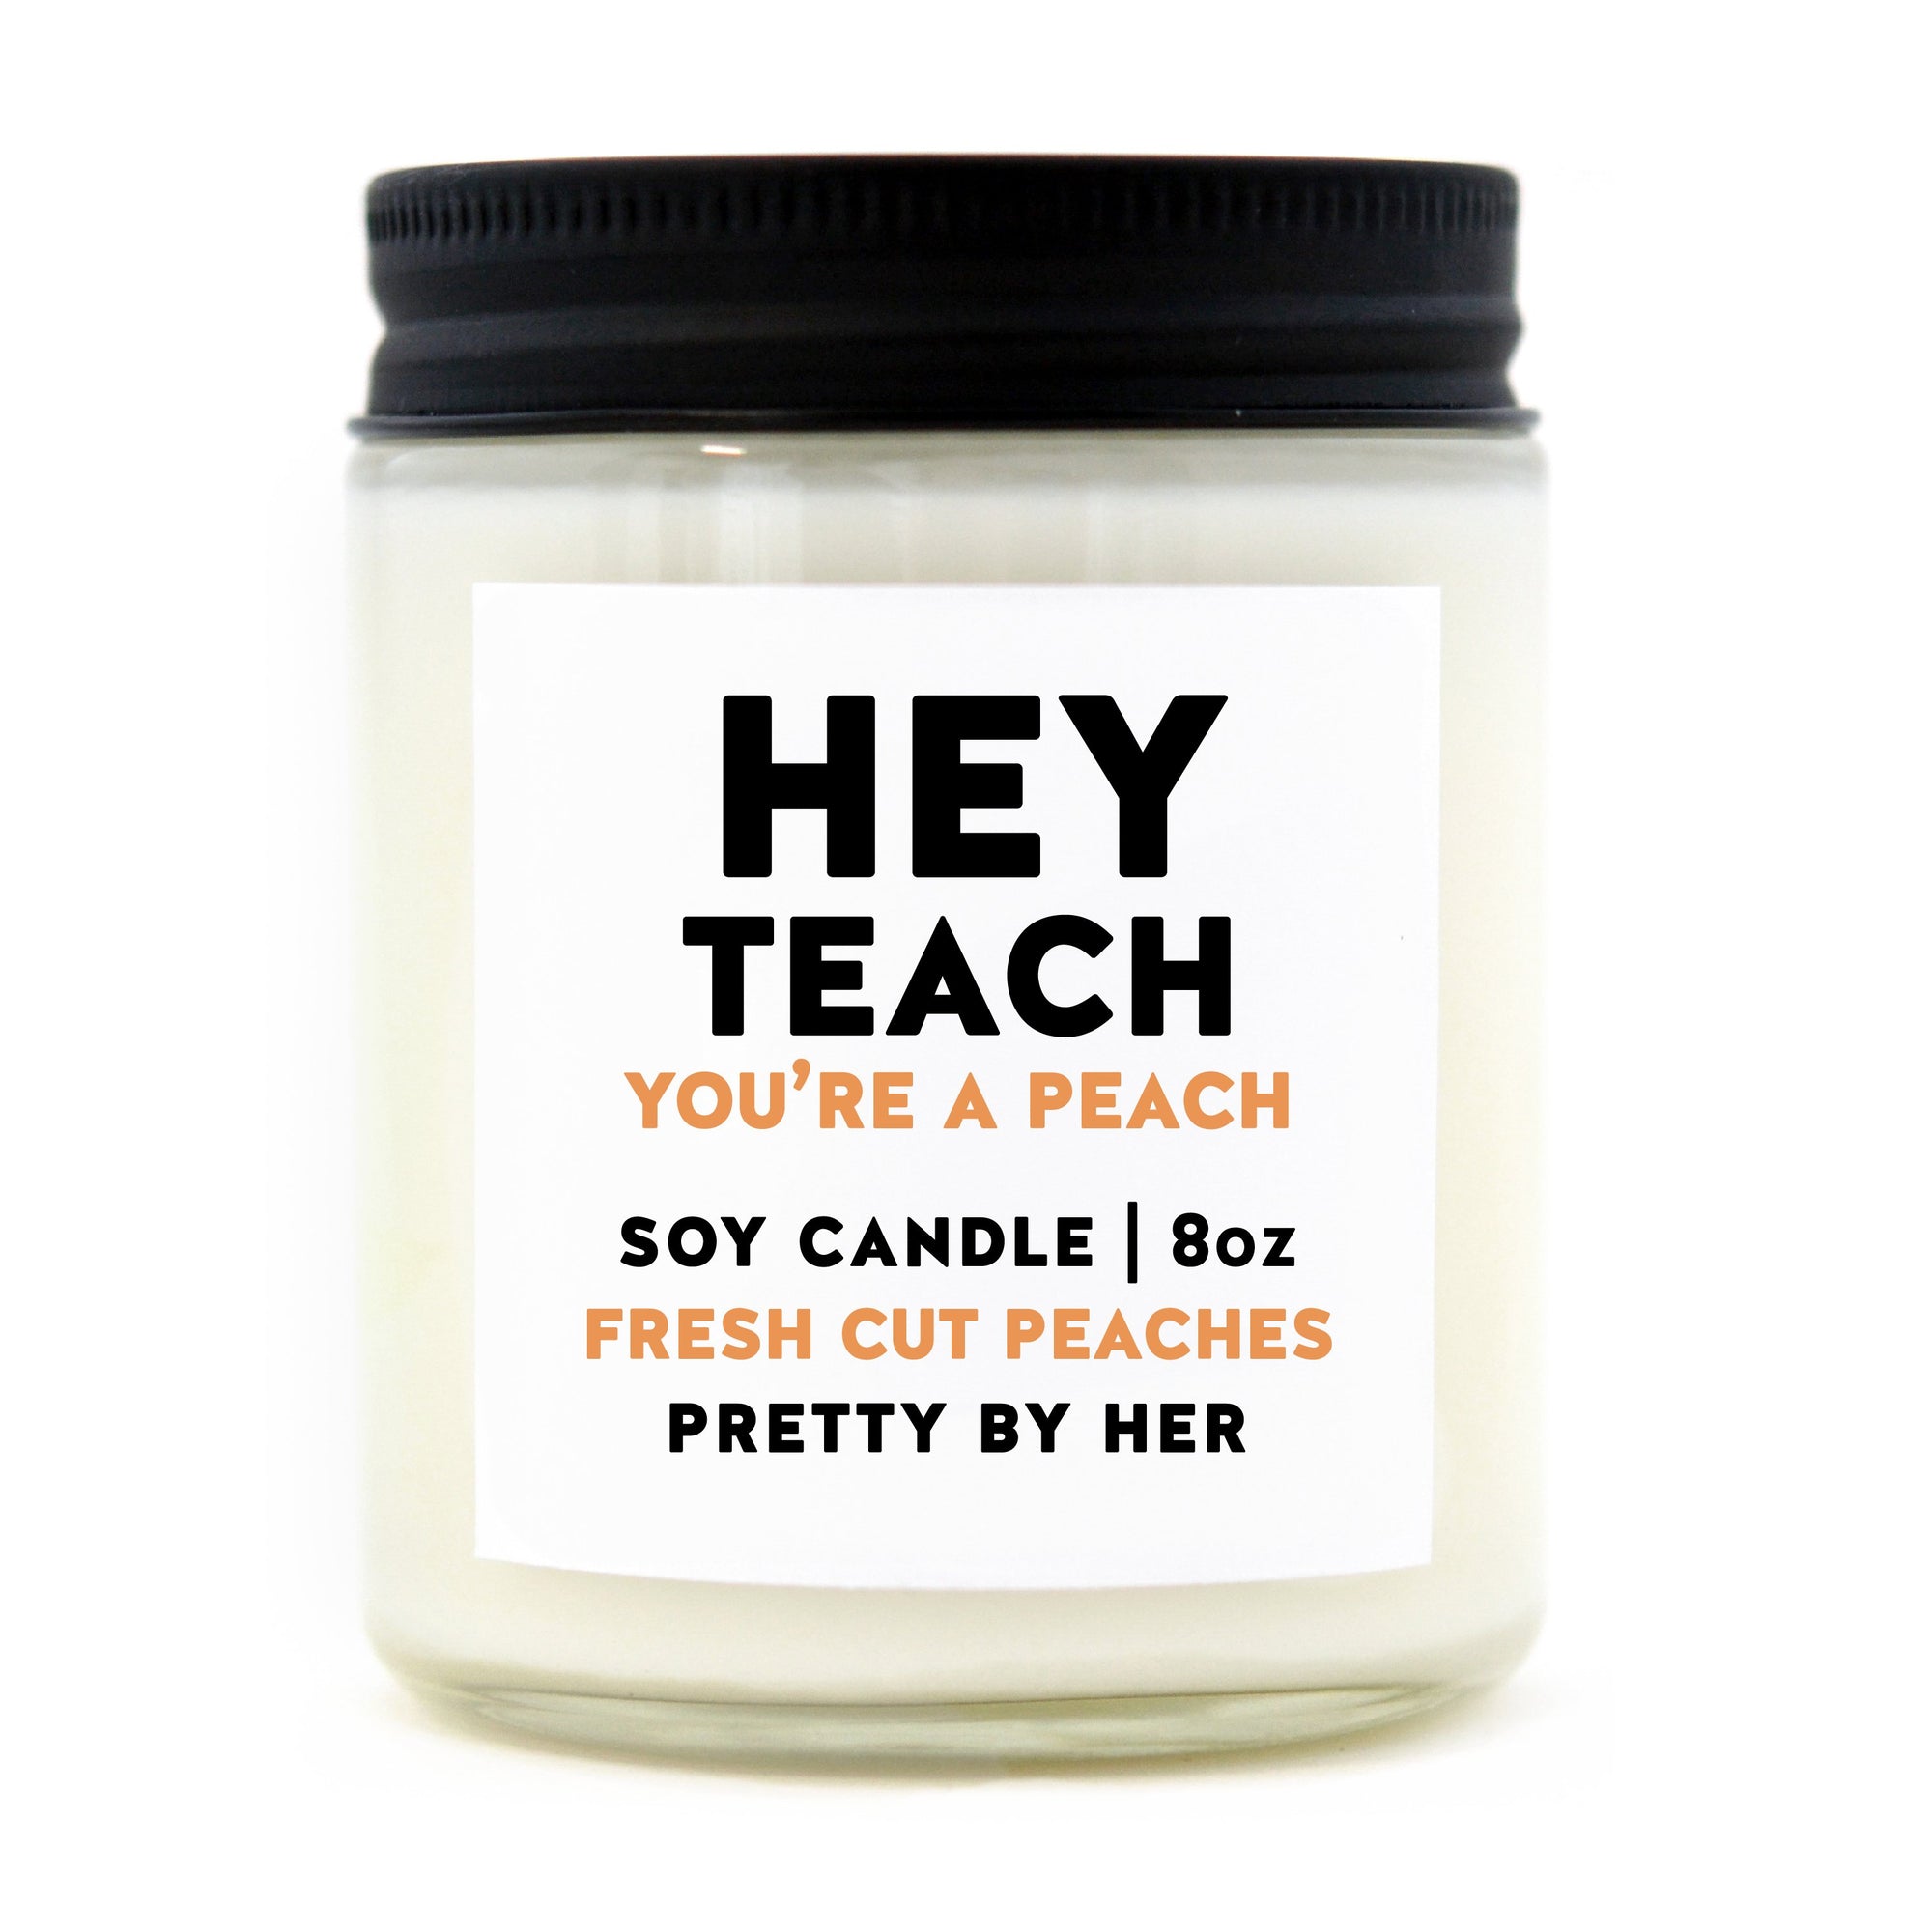 Soy candle - Hey Teach